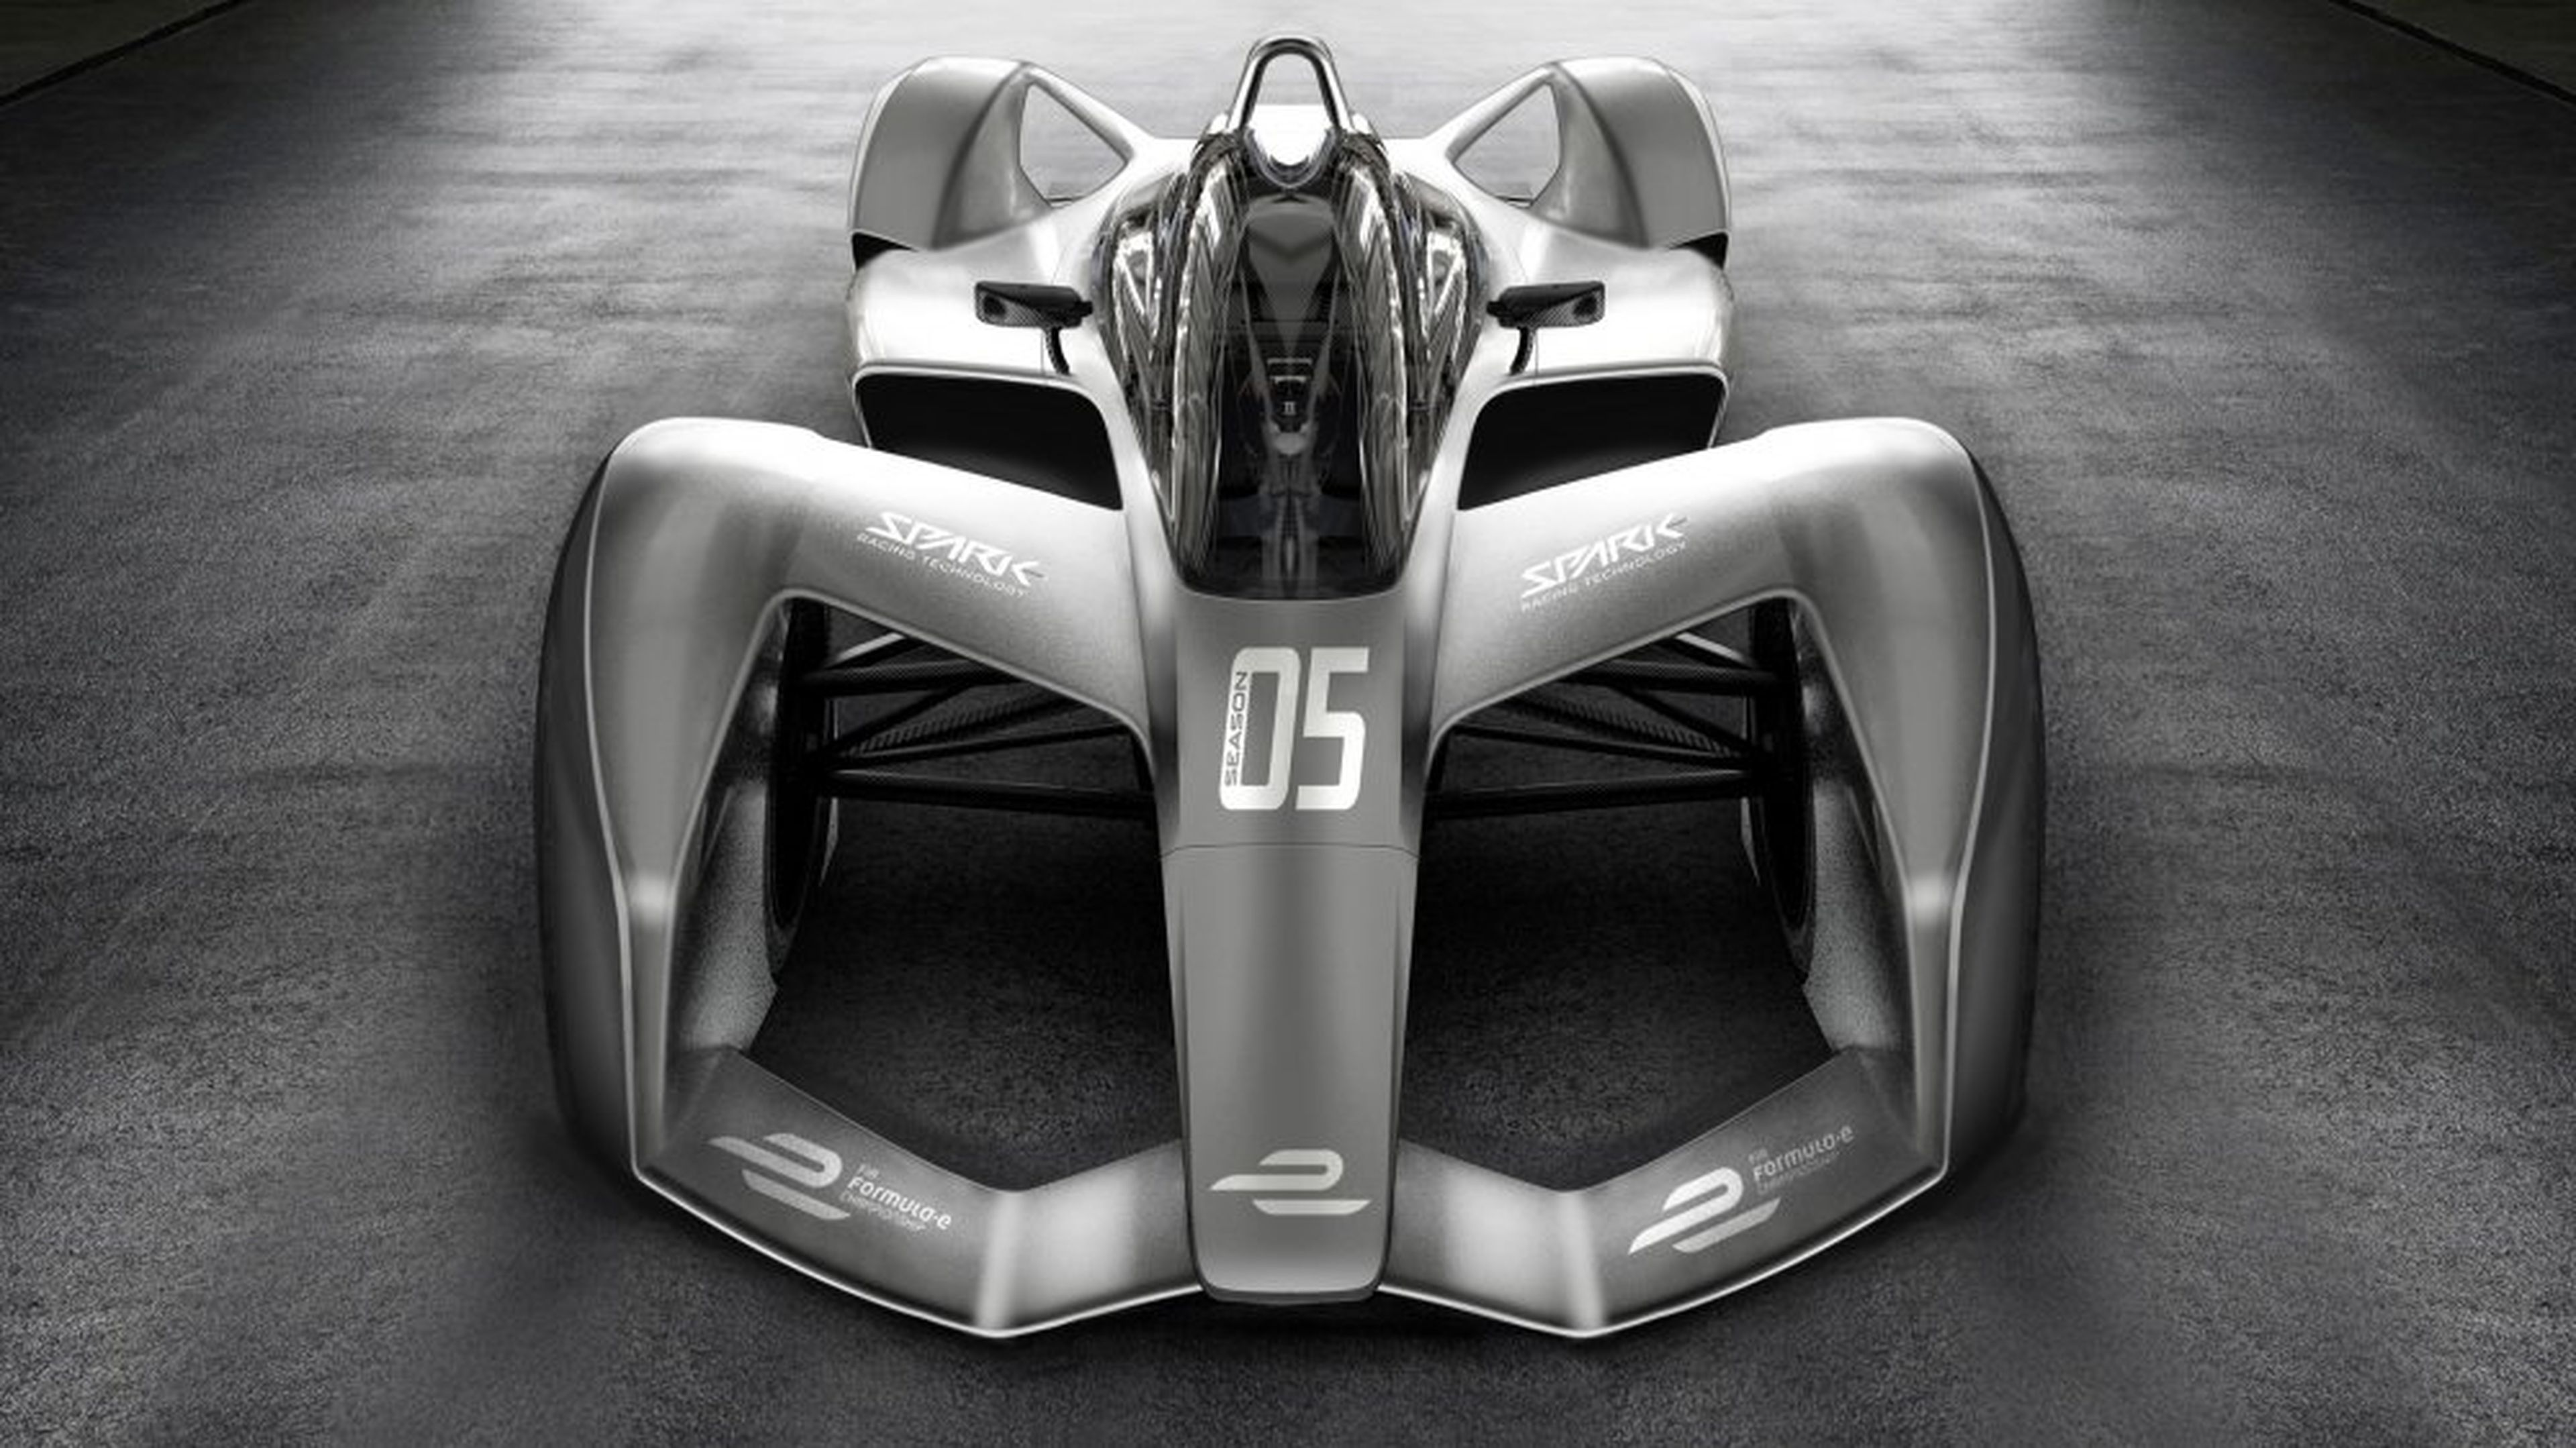 Prototipo del nuevo modelo de coche de Fórmula E